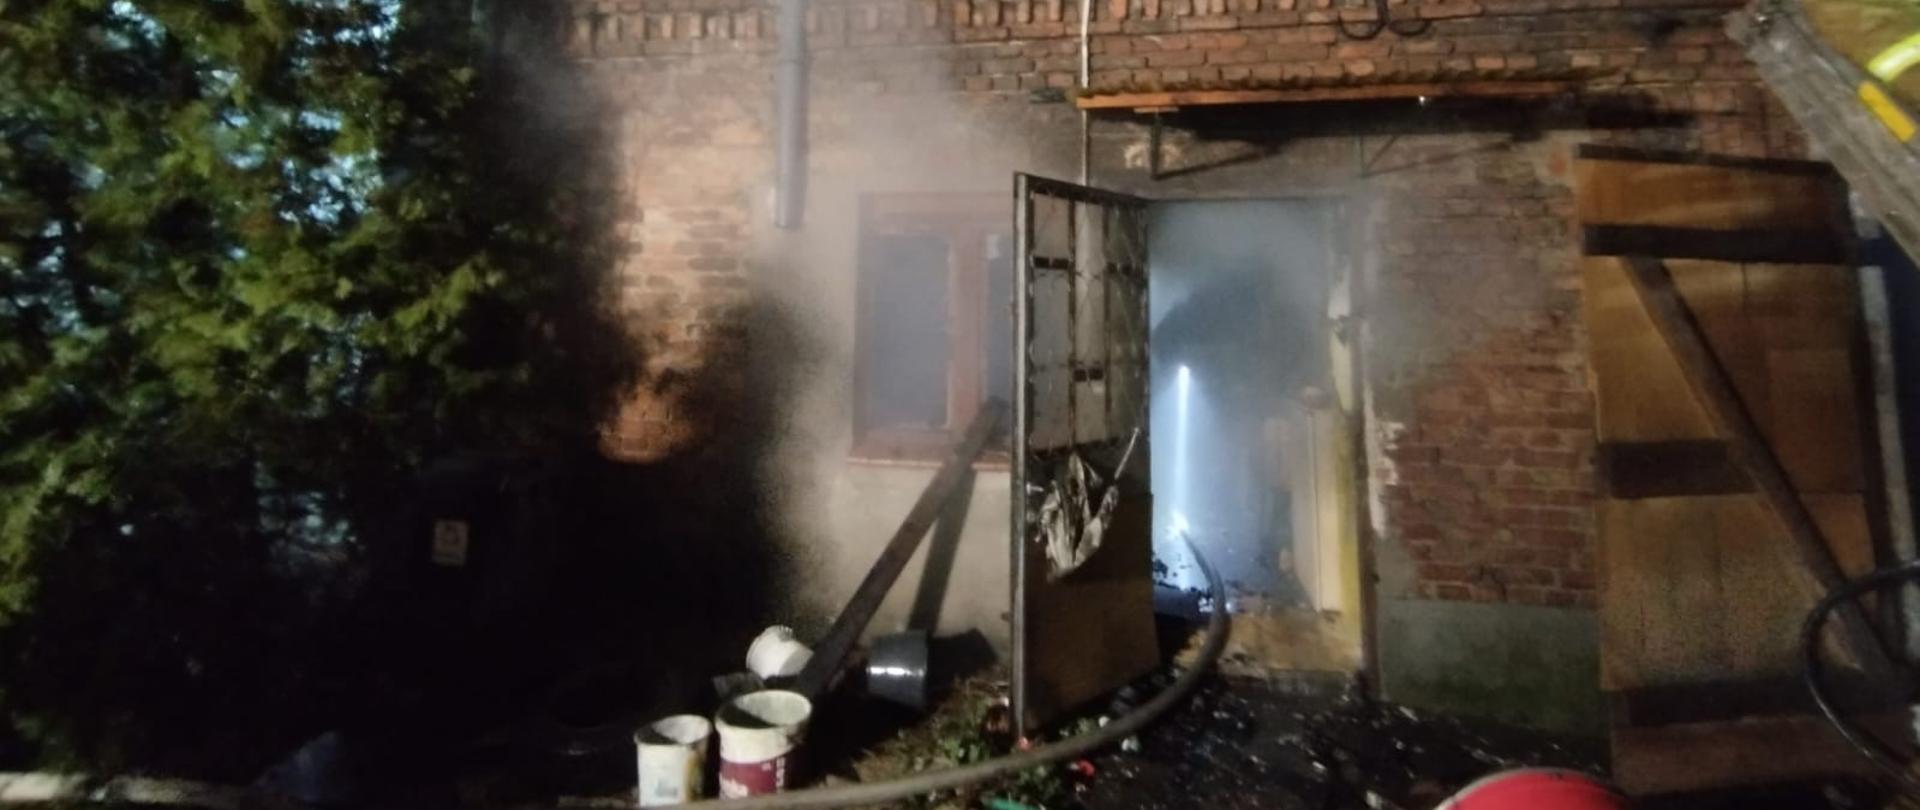 Na zdjęciu widać zadymienie w budynku, który się pali